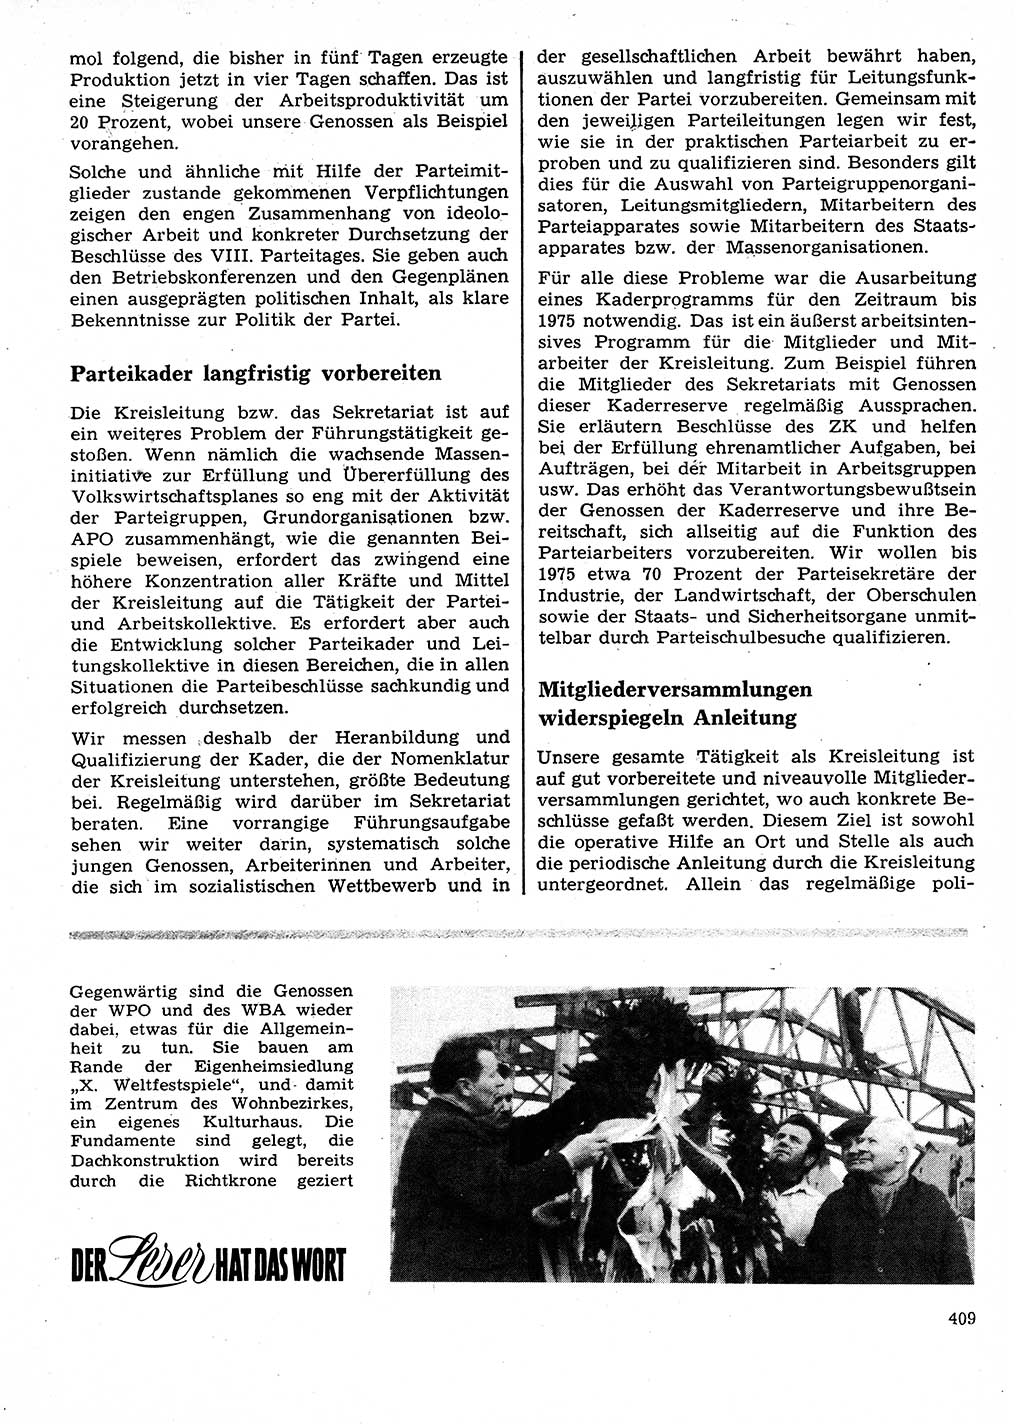 Neuer Weg (NW), Organ des Zentralkomitees (ZK) der SED (Sozialistische Einheitspartei Deutschlands) für Fragen des Parteilebens, 28. Jahrgang [Deutsche Demokratische Republik (DDR)] 1973, Seite 409 (NW ZK SED DDR 1973, S. 409)